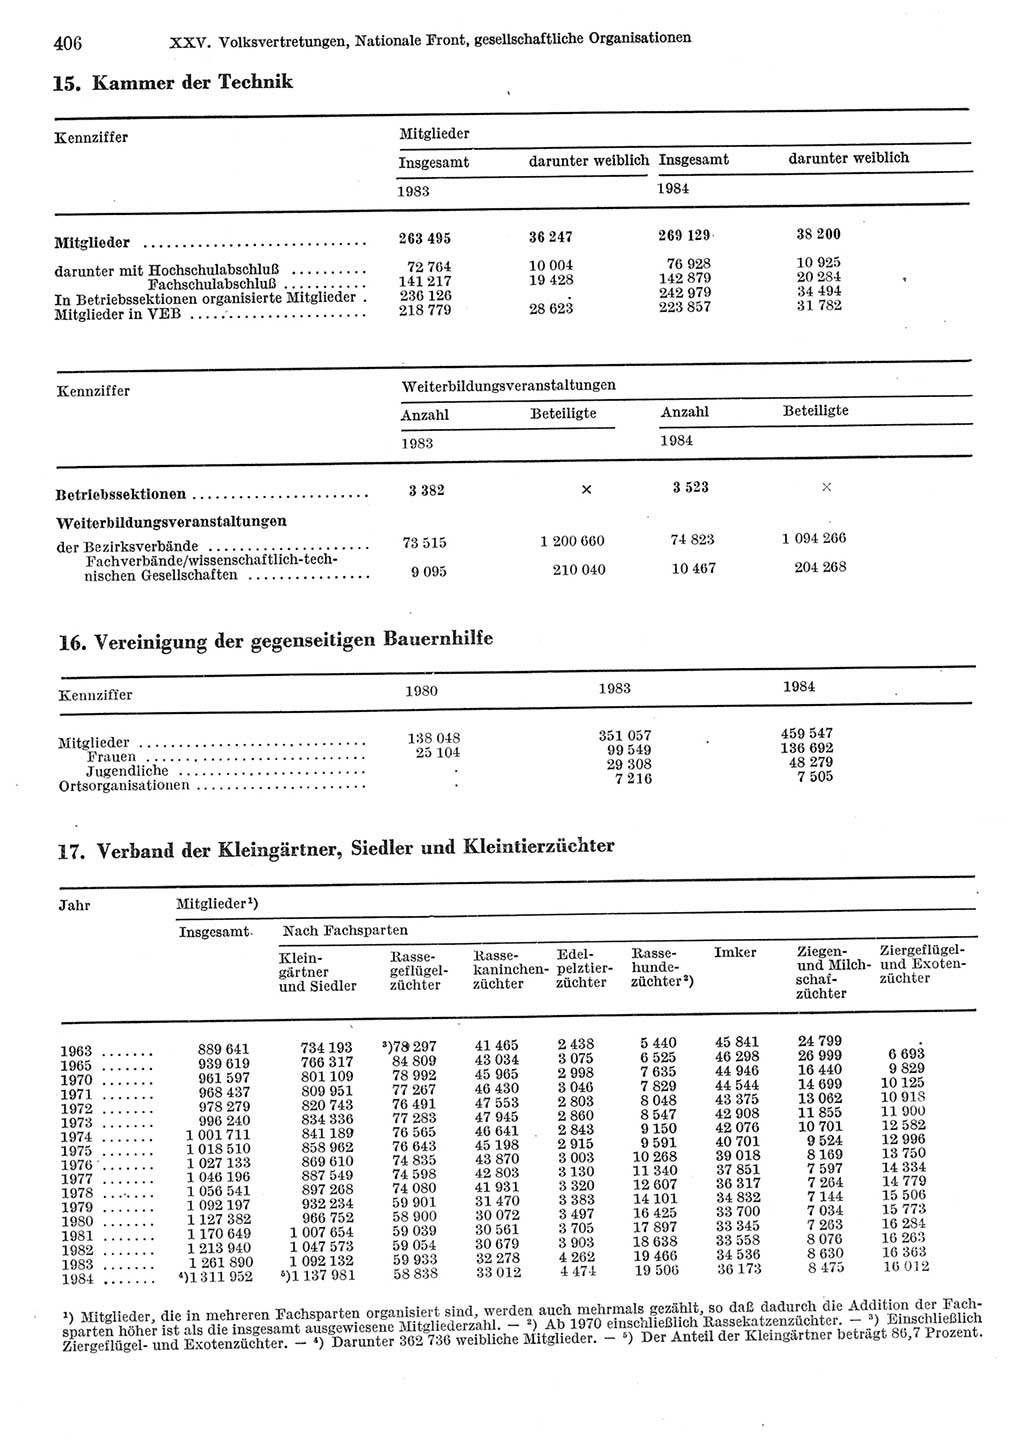 Statistisches Jahrbuch der Deutschen Demokratischen Republik (DDR) 1985, Seite 406 (Stat. Jb. DDR 1985, S. 406)